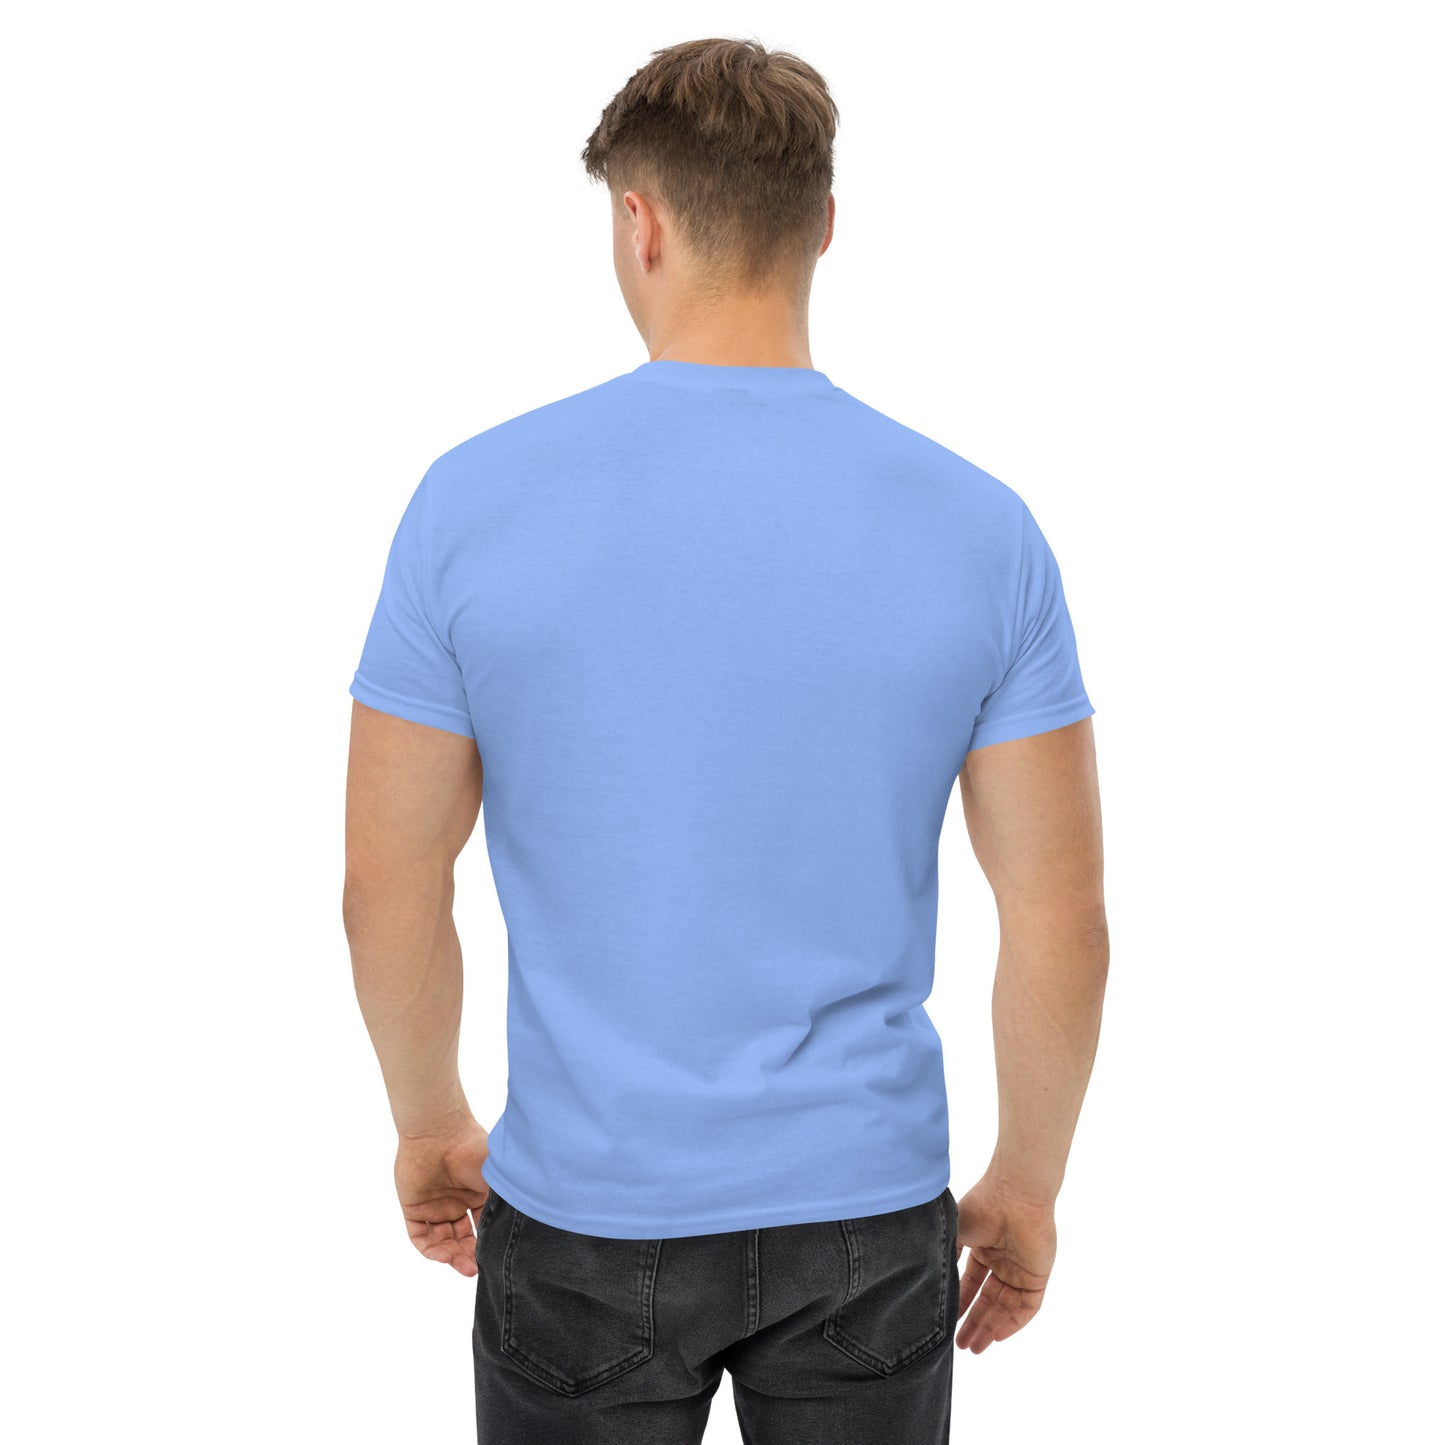 AQUA AIST - Camiseta clássica masculina